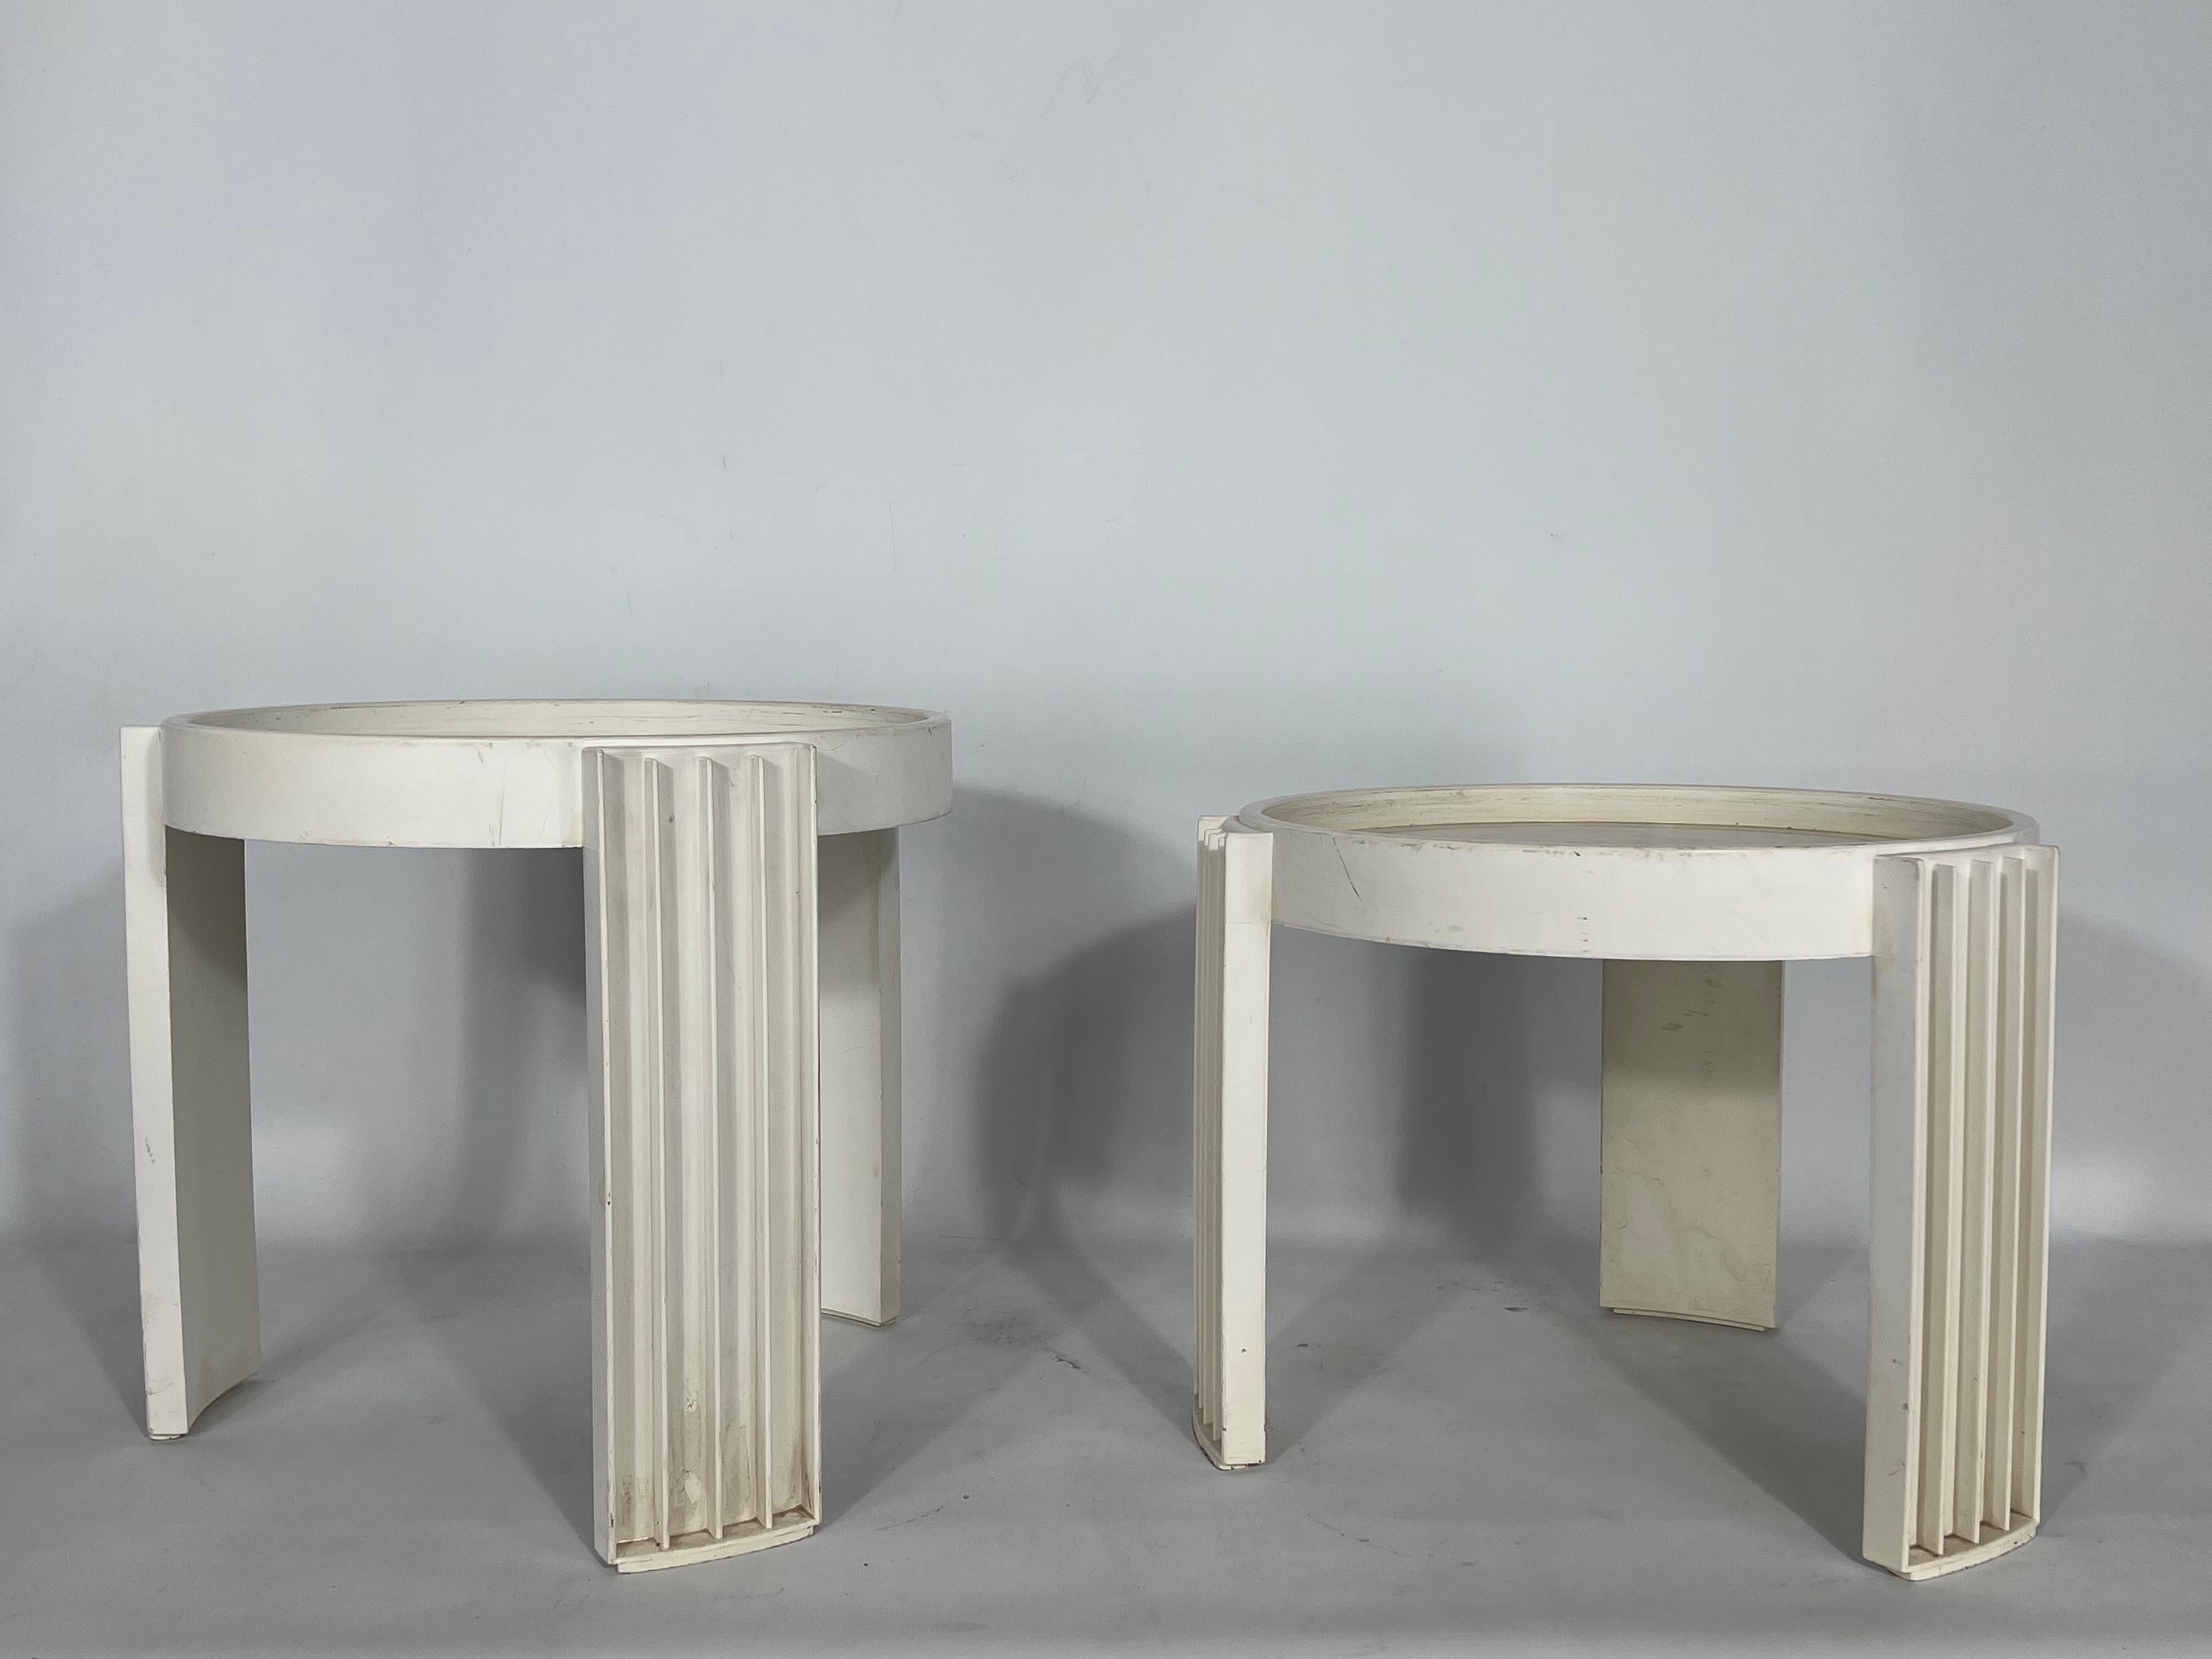 Fairen Zustand mit offensichtlichen Spuren von Alter und Nutzung für diesen Satz von zwei Kunststoff-Nesting-Tabelle Modell Marema, entworfen von Gianfranco Frattini und produziert von Cassina in den 60er Jahren.